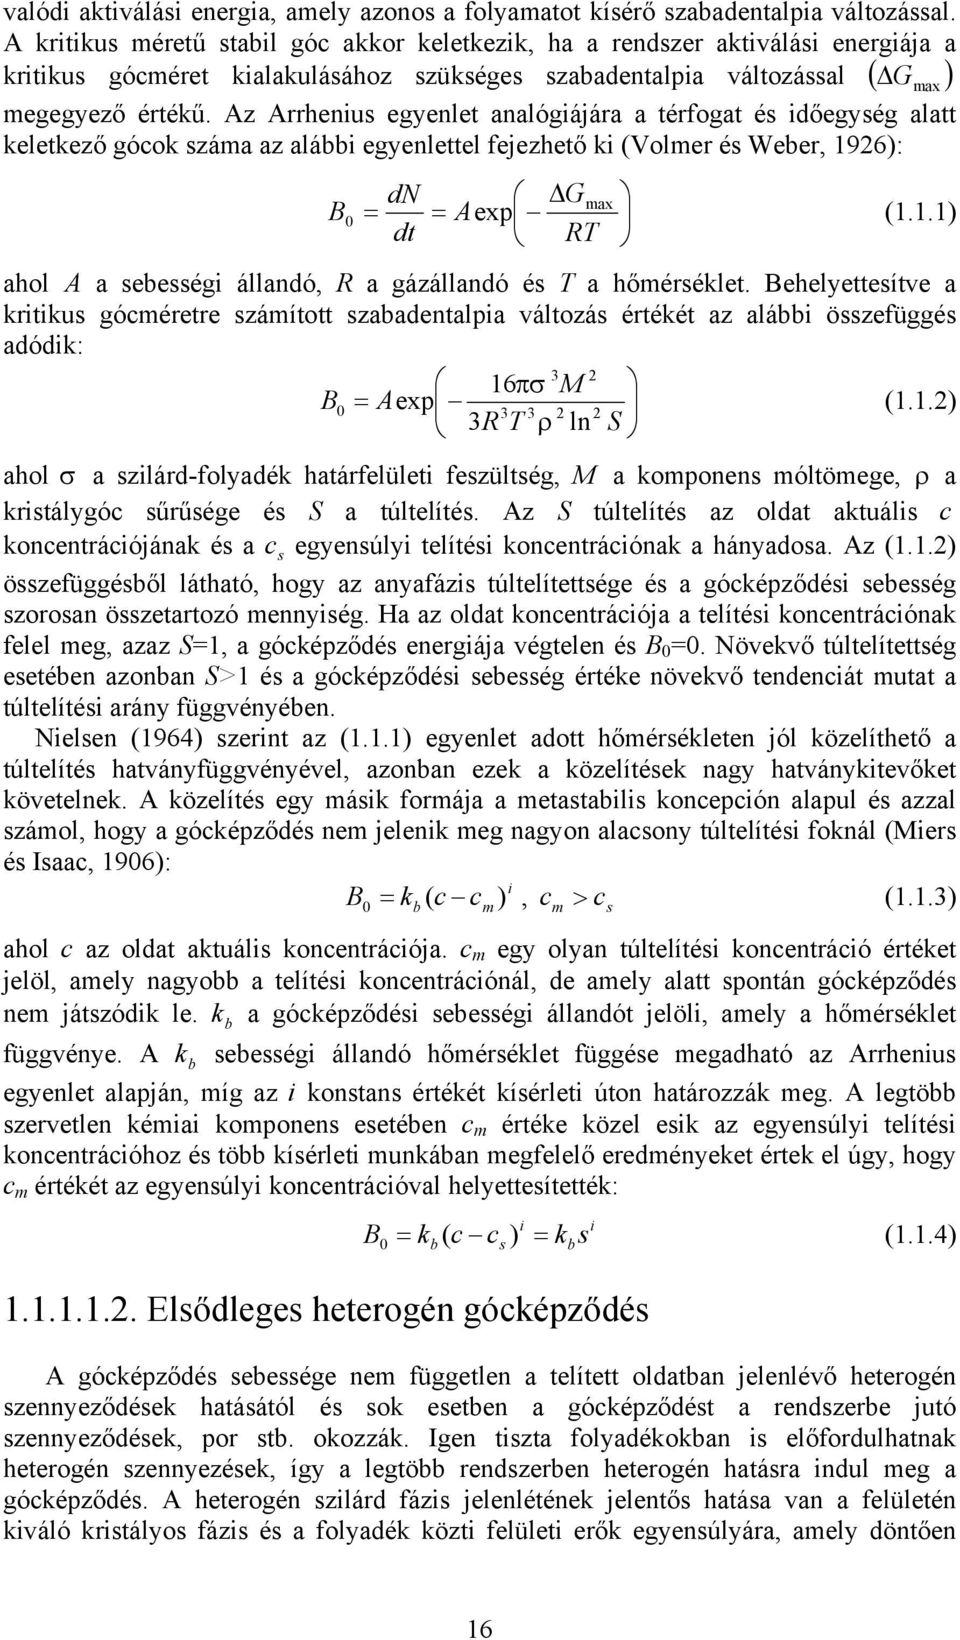 Az Arrhenu egyenle analógáára a érfoga é dőegyég ala kelekező góok záma az alább egyenleel feezheő k (Volmer é Weber, 926): dn Gmax B Aexp (.